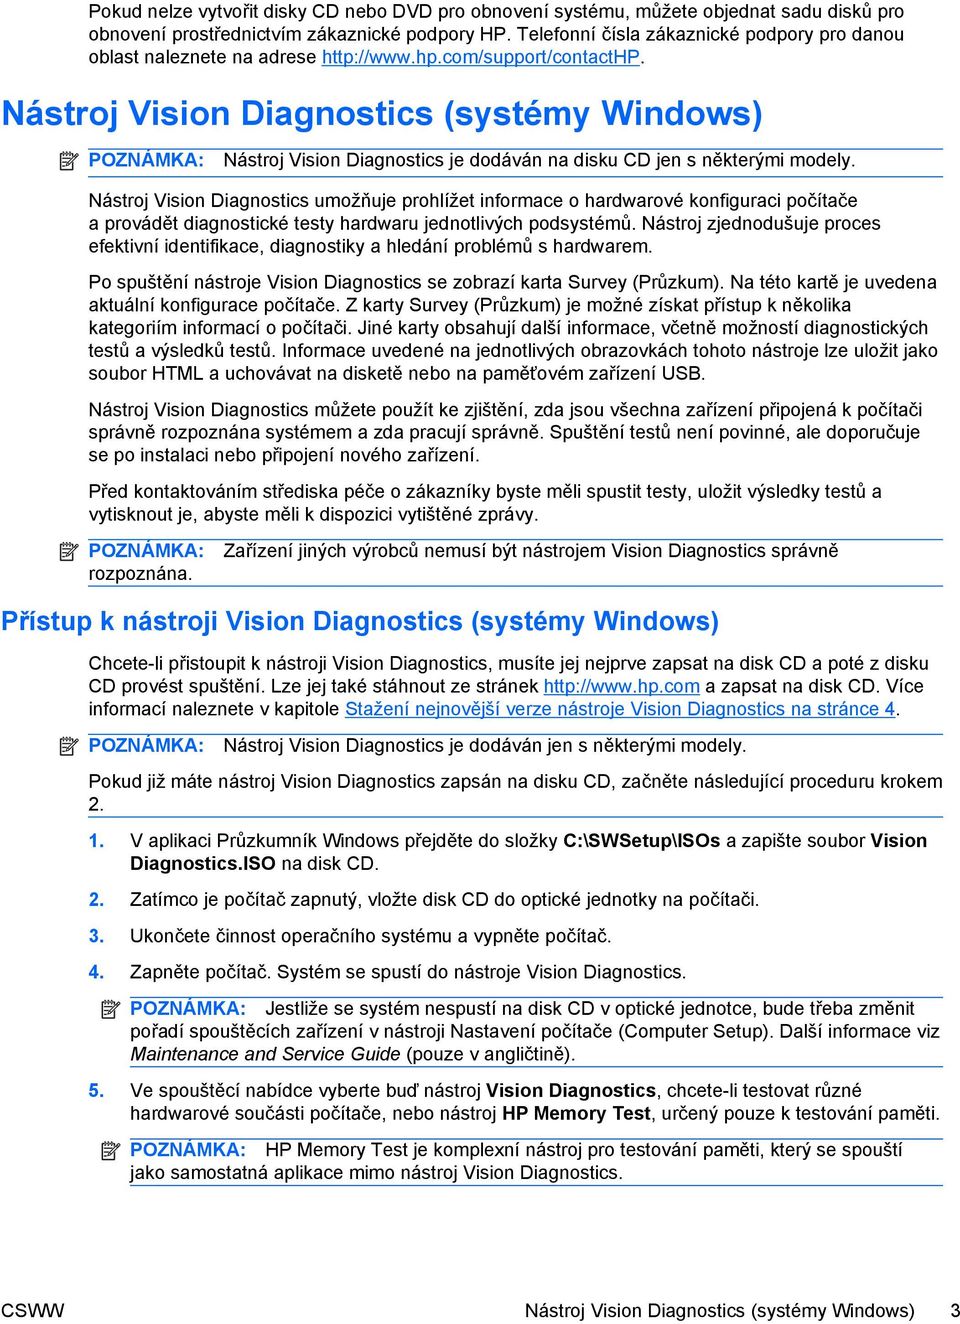 Nástroj Vision Diagnostics (systémy Windows) POZNÁMKA: Nástroj Vision Diagnostics je dodáván na disku CD jen s některými modely.